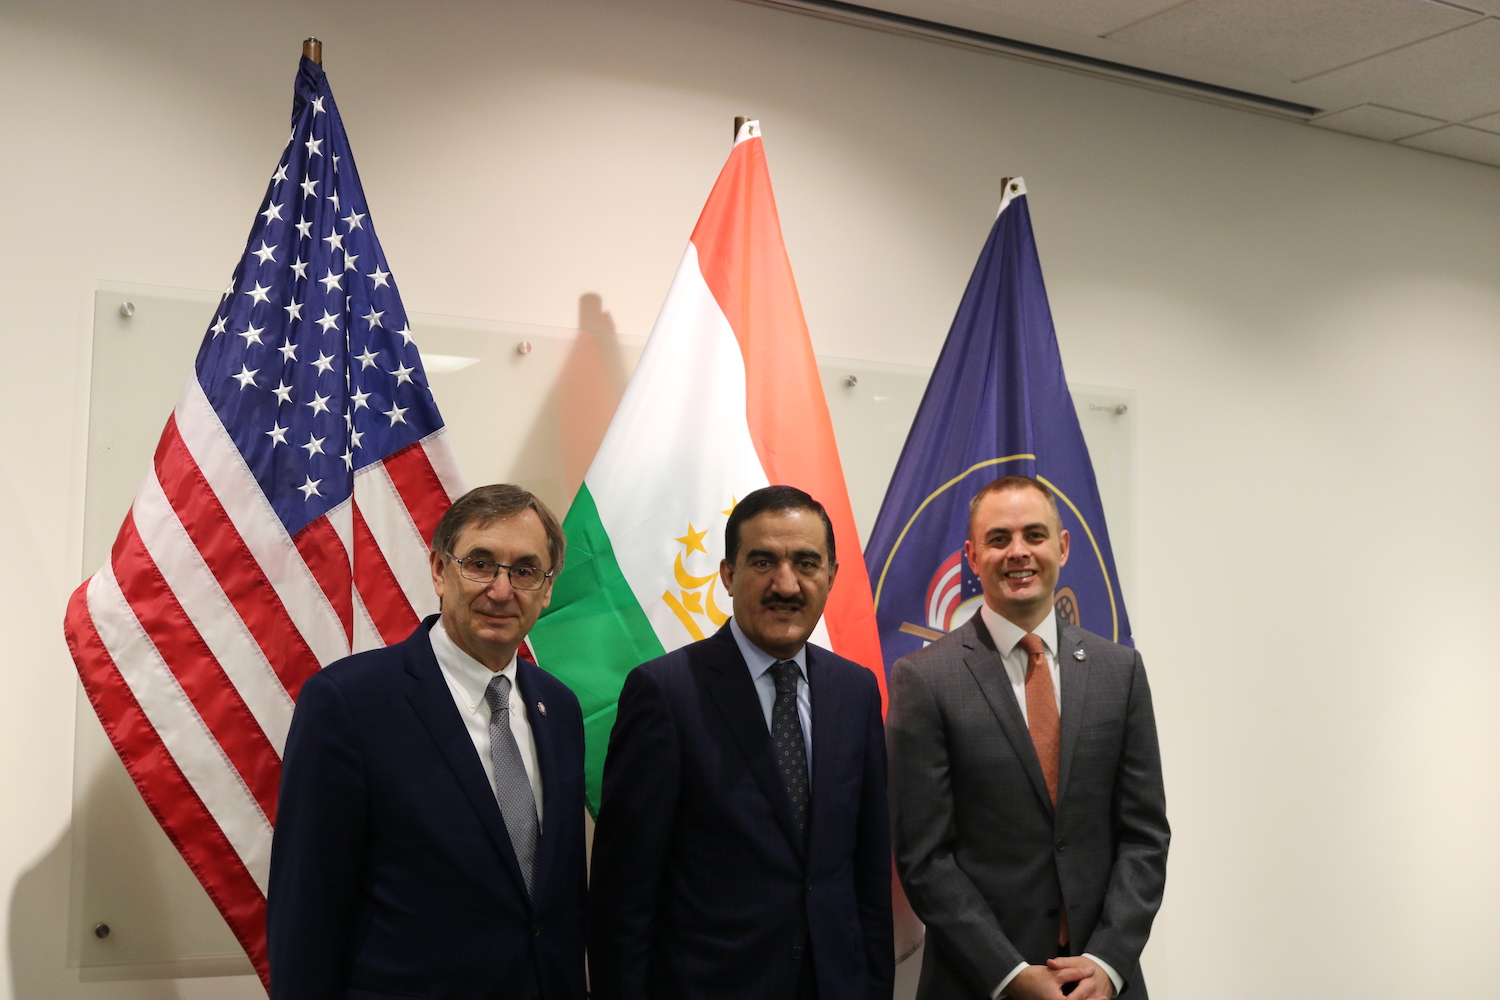 Mr. Franz Kolb, Ambassador Mahmadaminov and Miles Hansen at the World Trade Center Luncheon